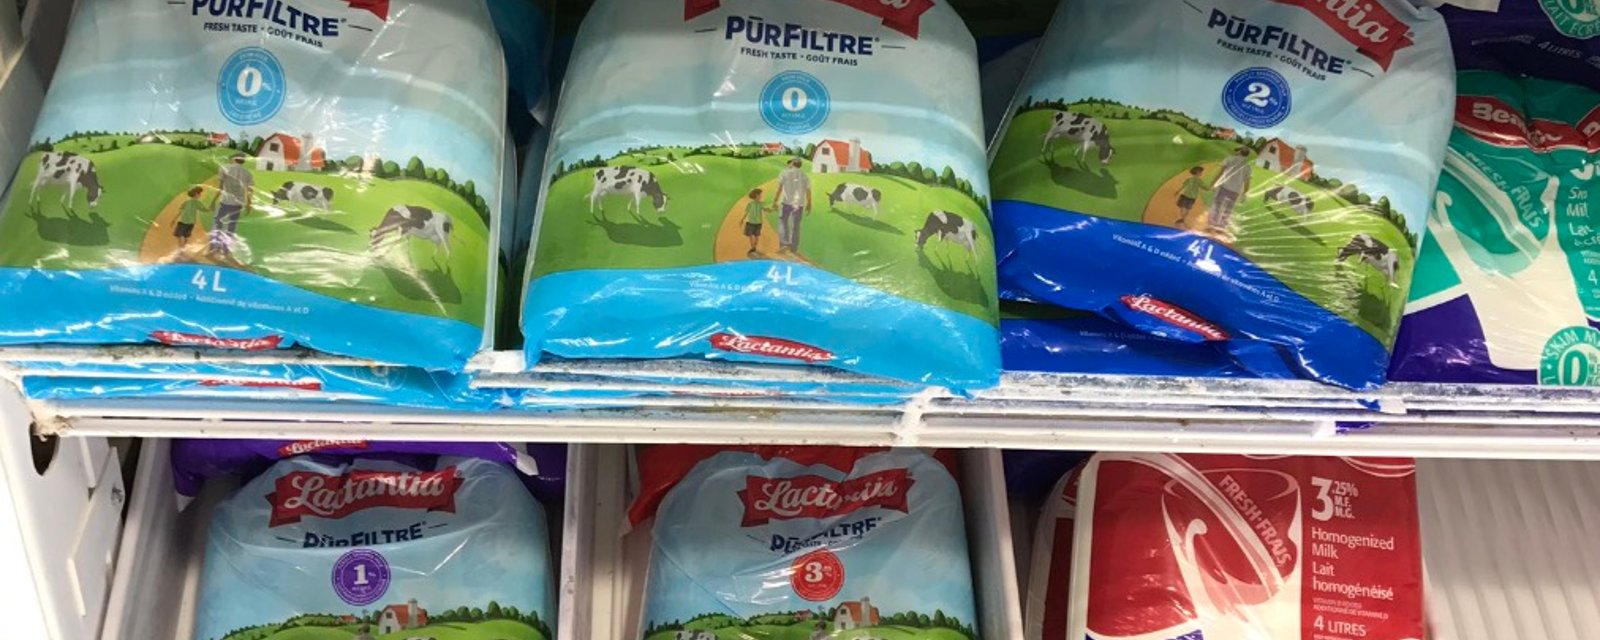 Ça pourrait bientôt être la fin des sacs de lait au Québec 